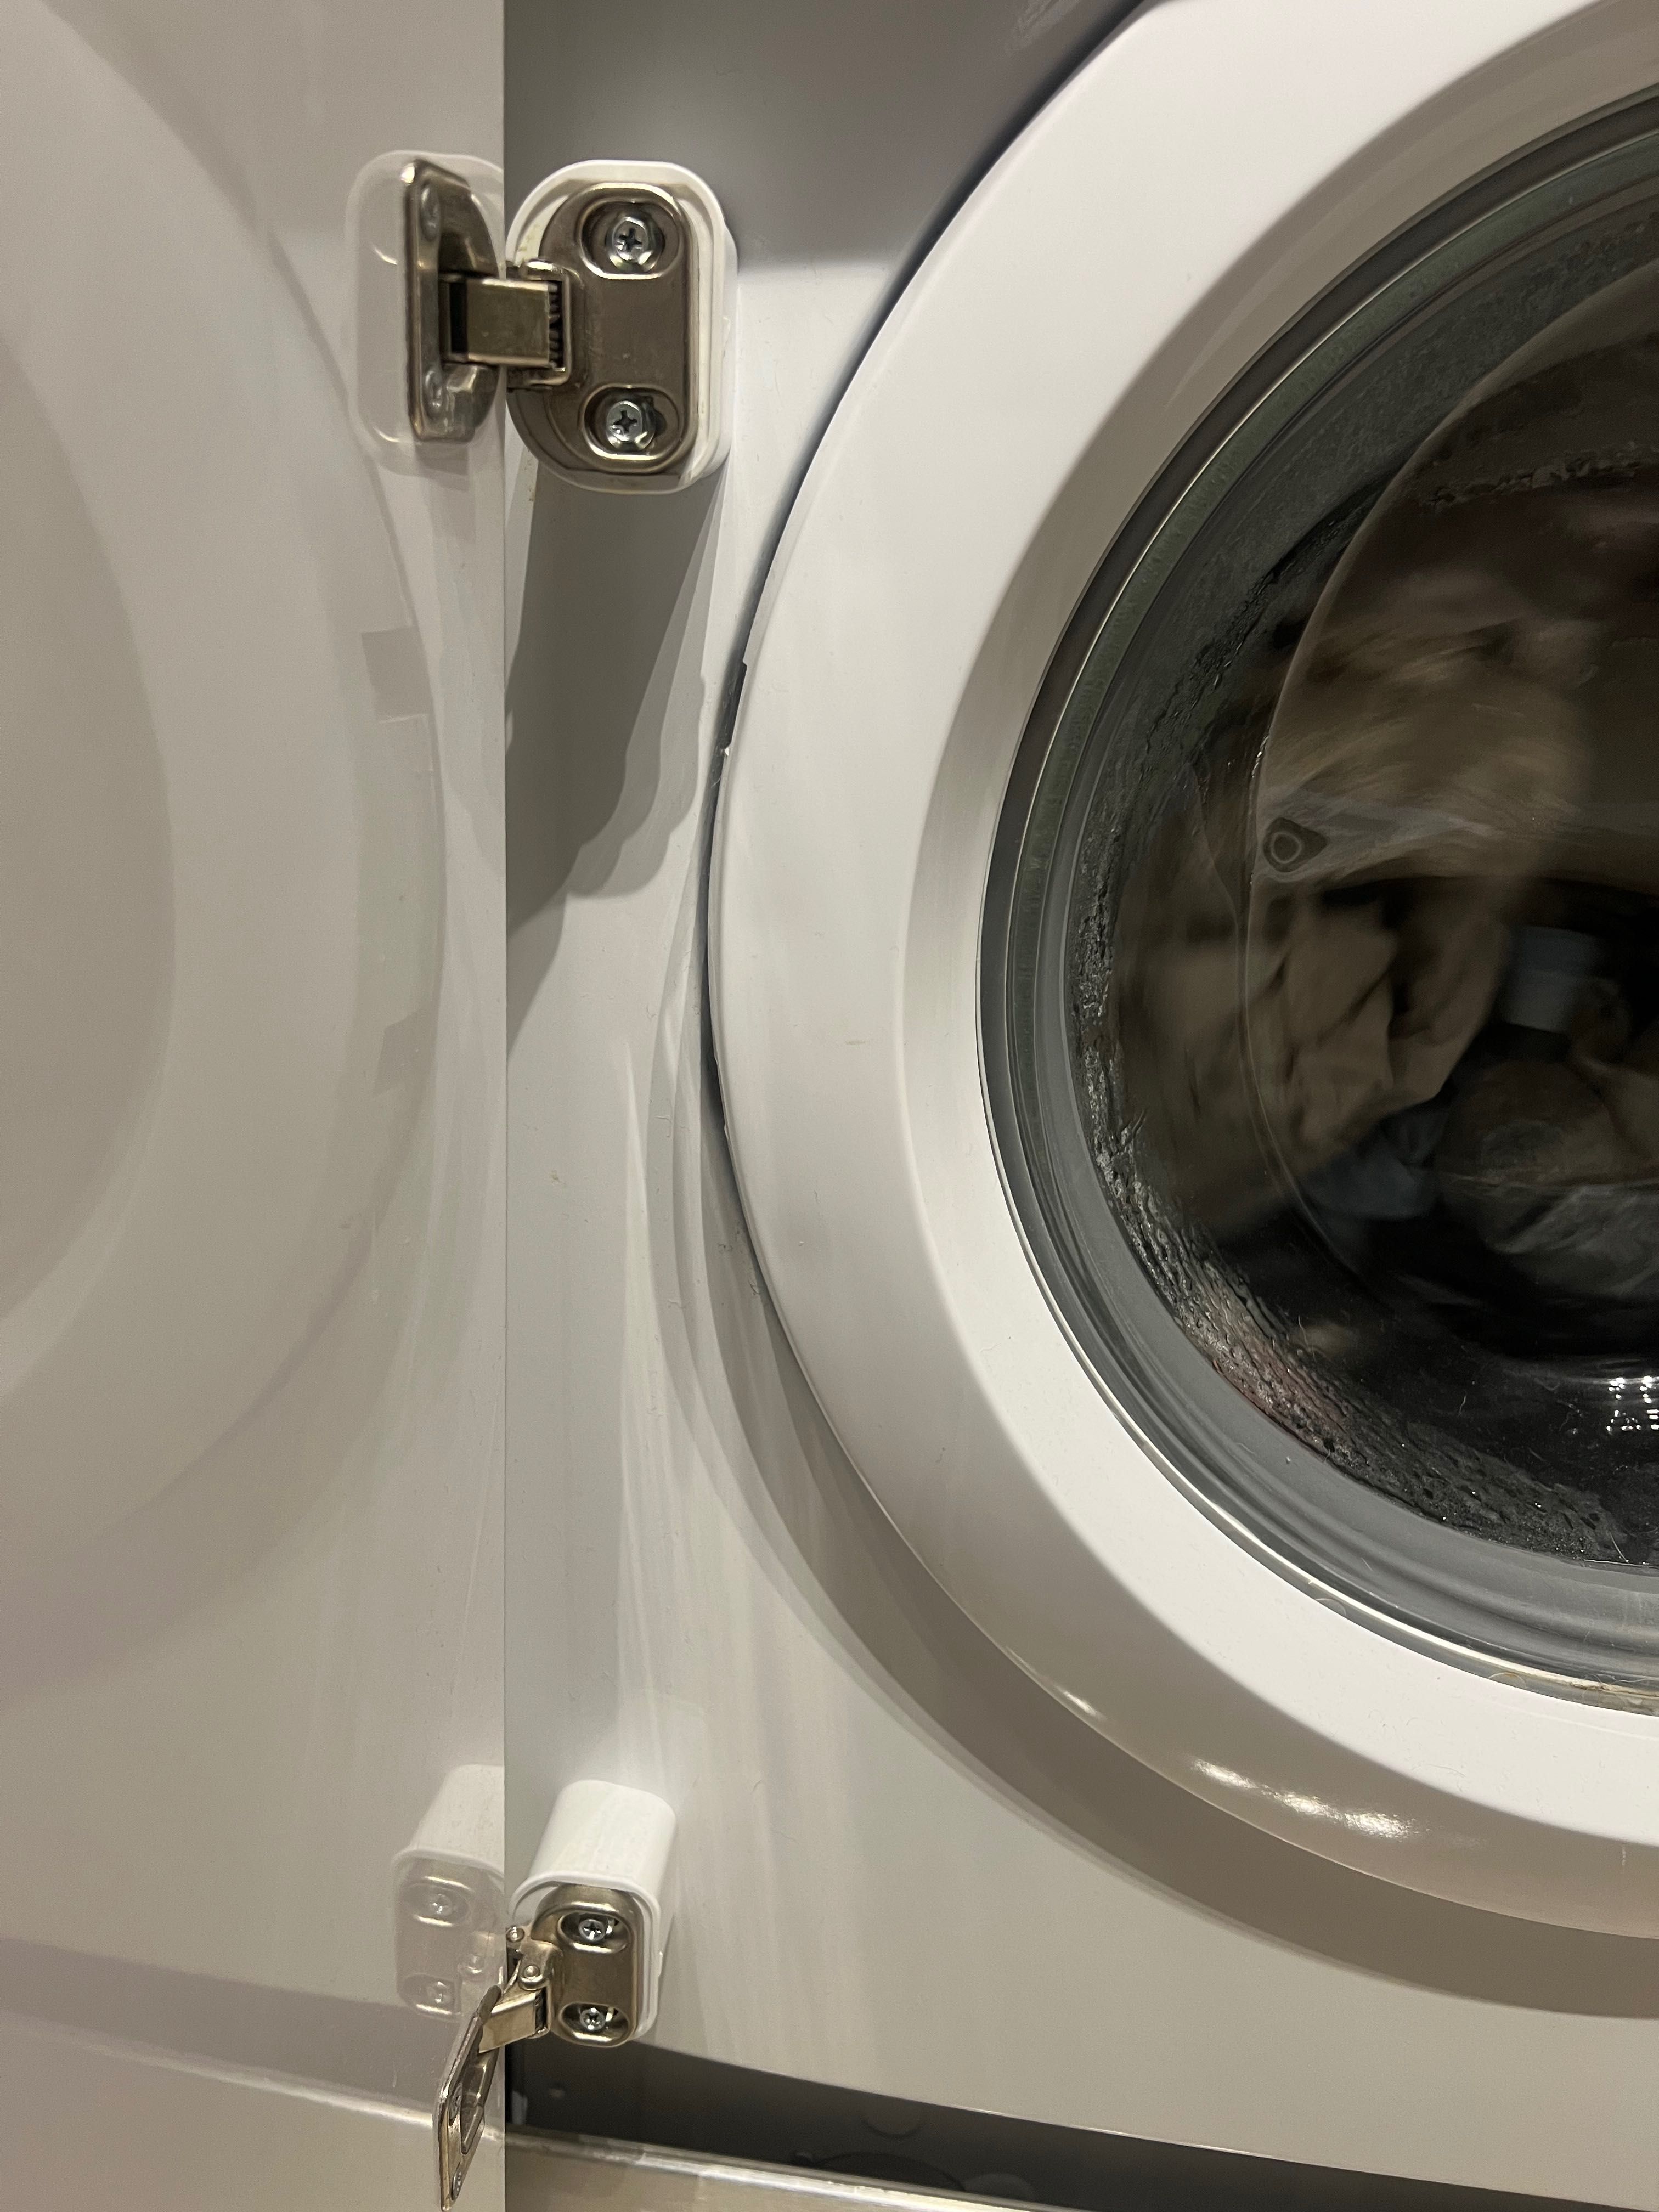 Máquina lavar roupa A+++